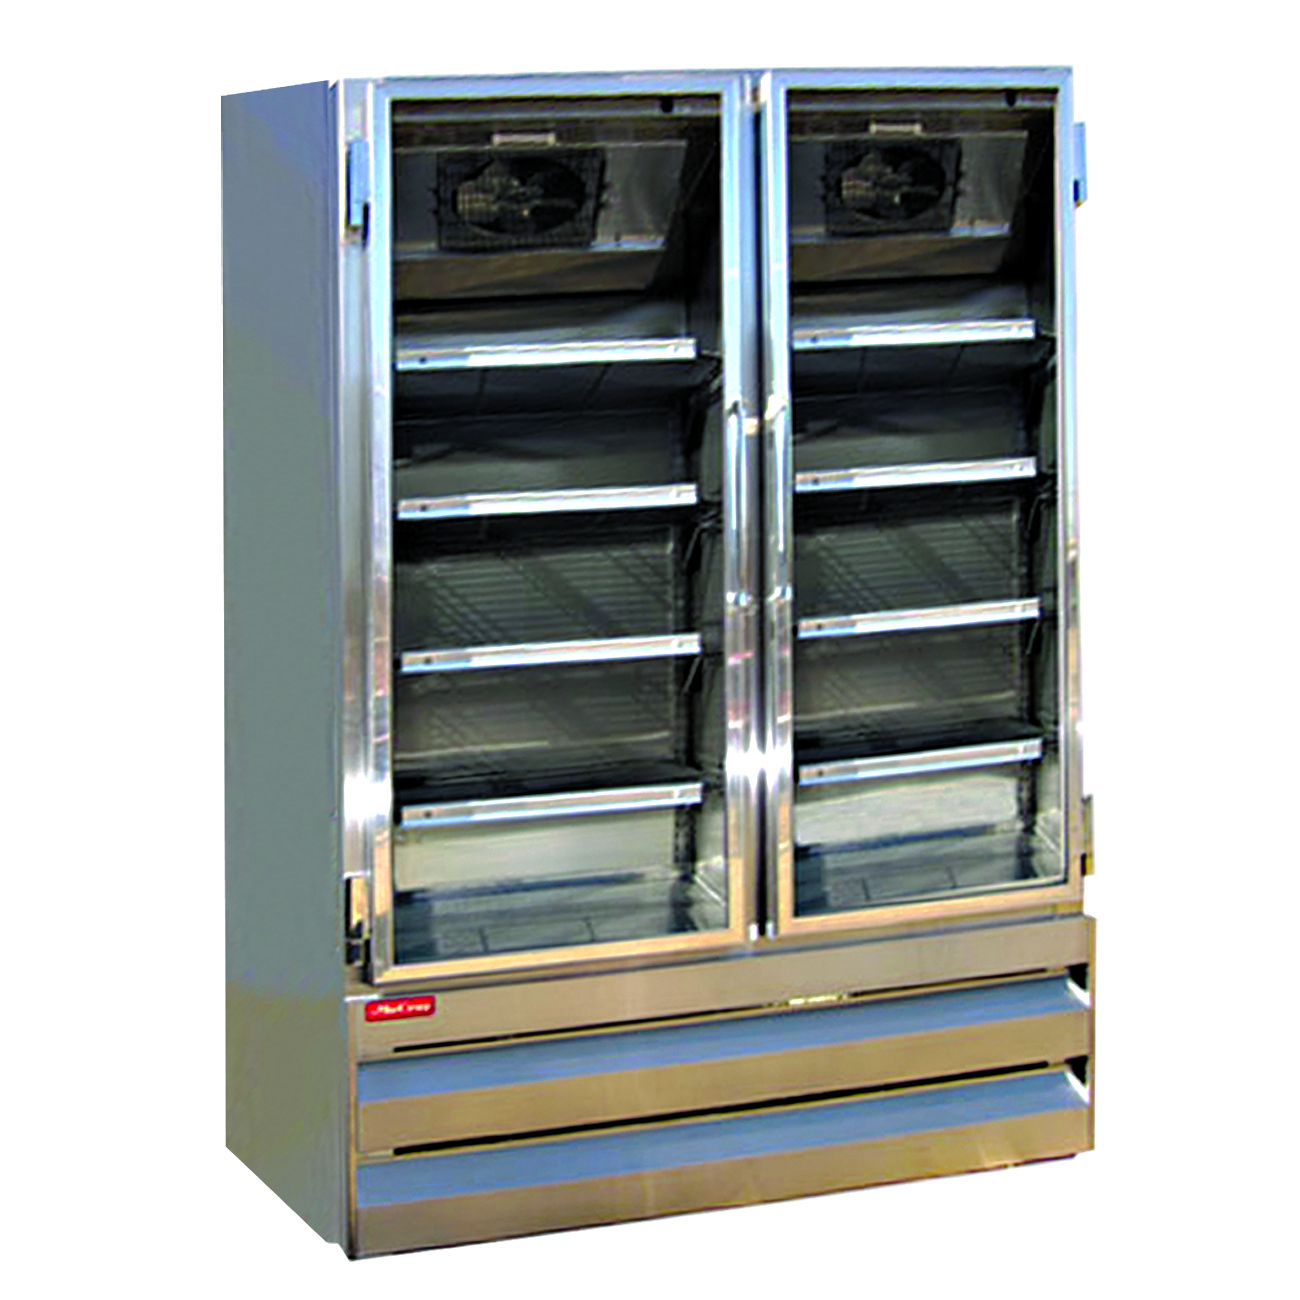 Howard-McCray GR48BM-B Merchandiser Refrigerator